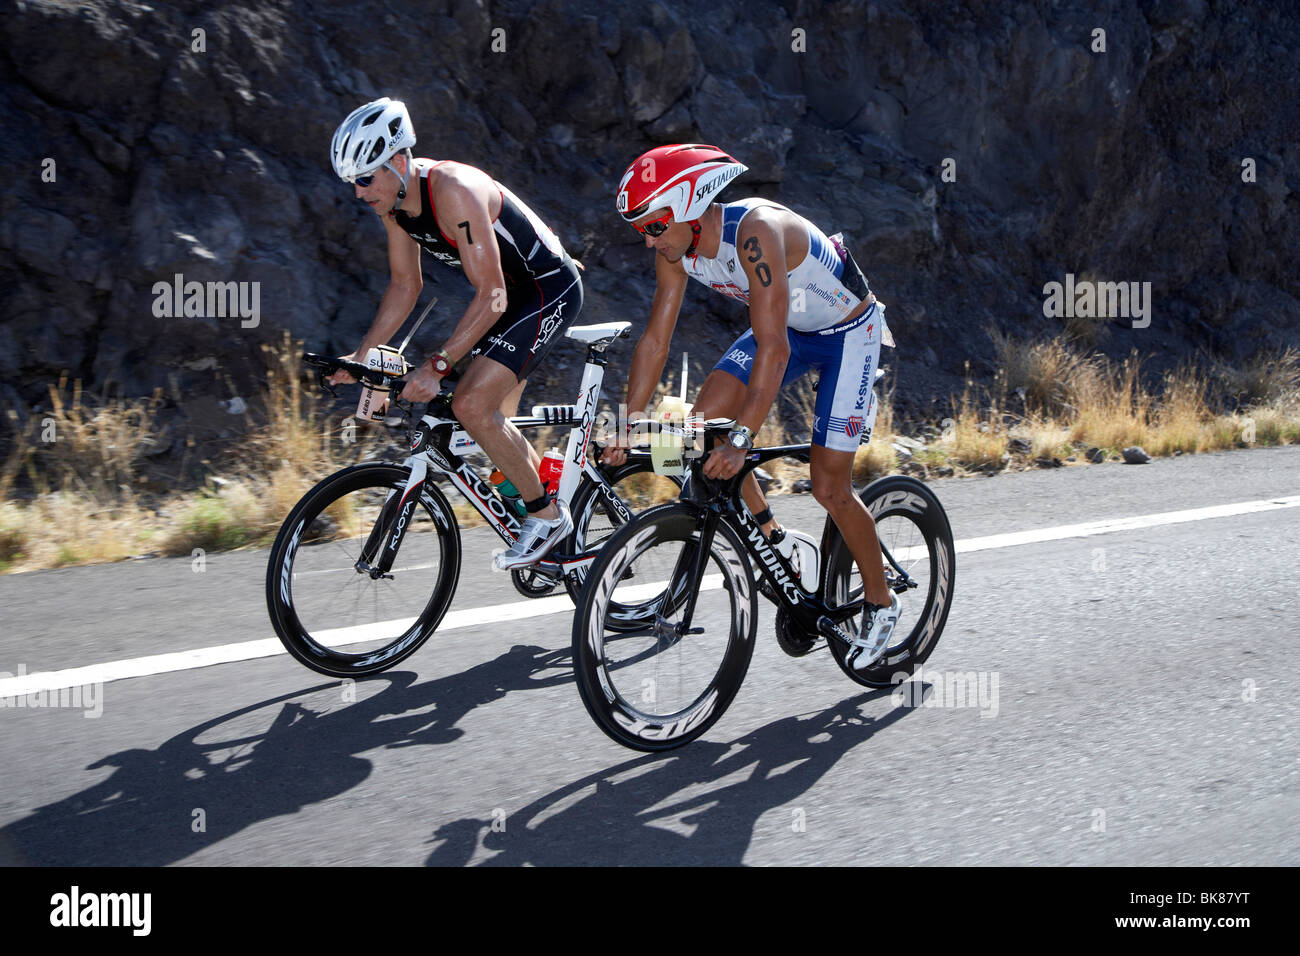 Die New Zealand Profi-Triathletin Terenzo Bozzone, Recht, und die Amerikaner Andy Potts auf der Radstrecke des Ironman Triathlon Stockfoto